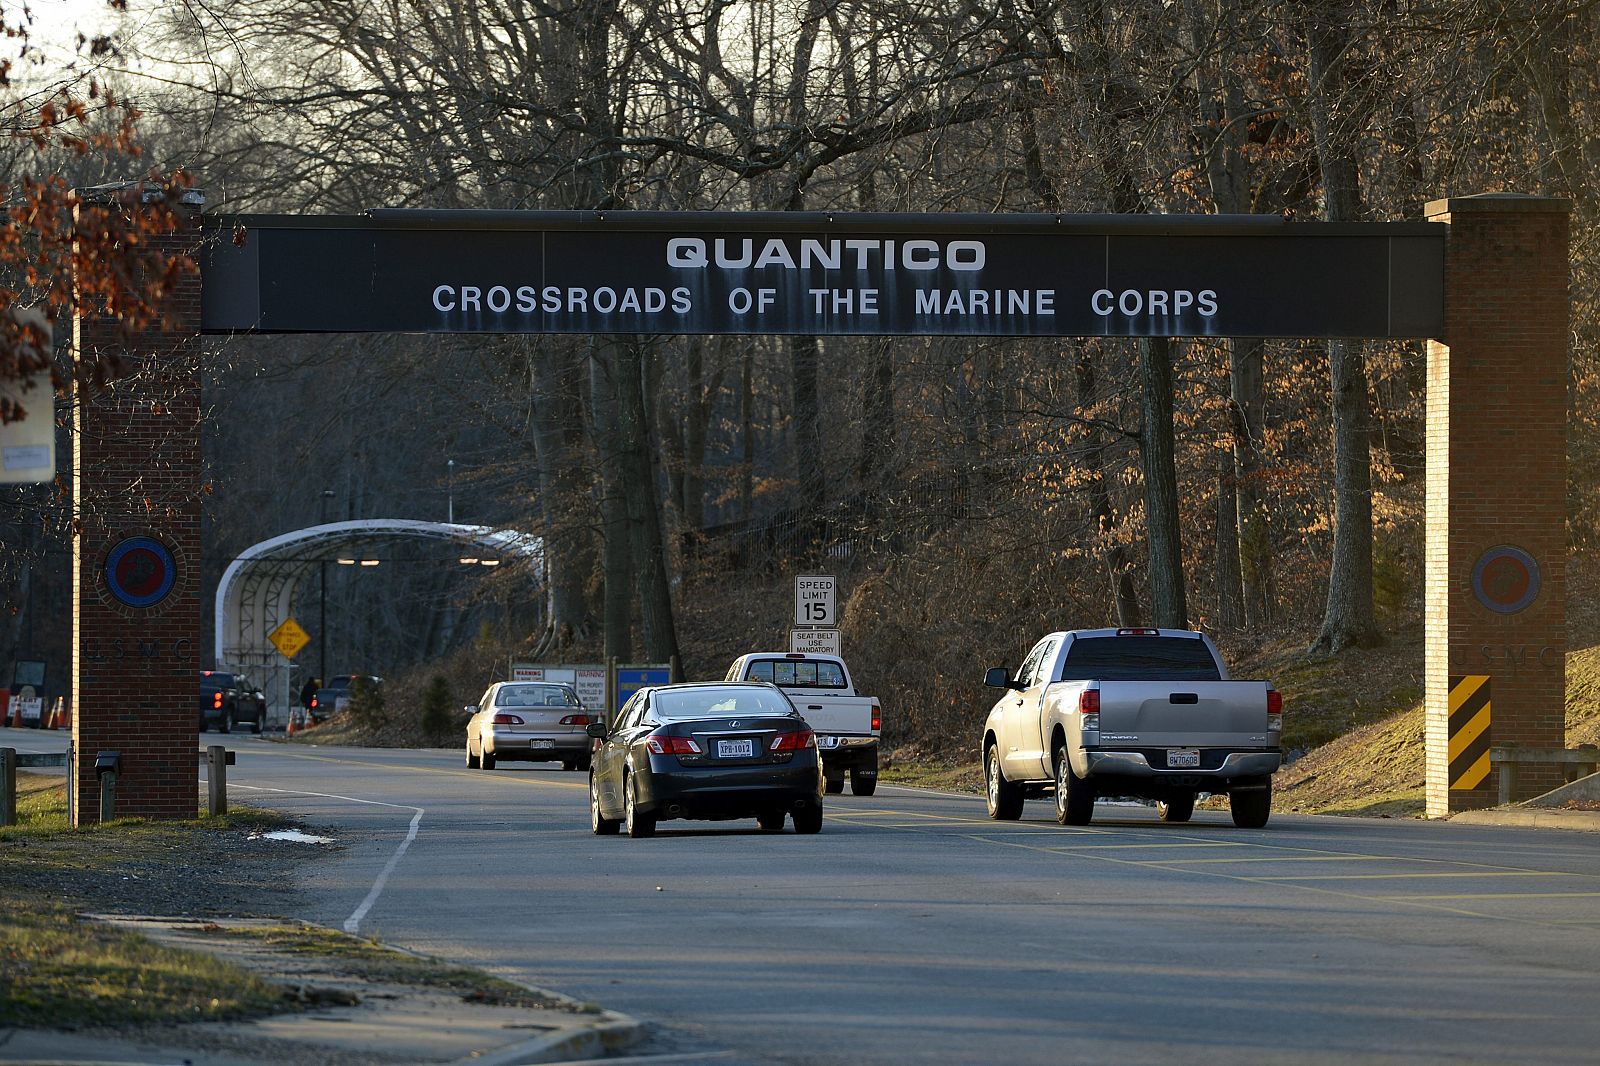 Entrada de la base de marines de Quantico, Virginia, Estados Unidos, donde han muerto tres marines en un tiroteo